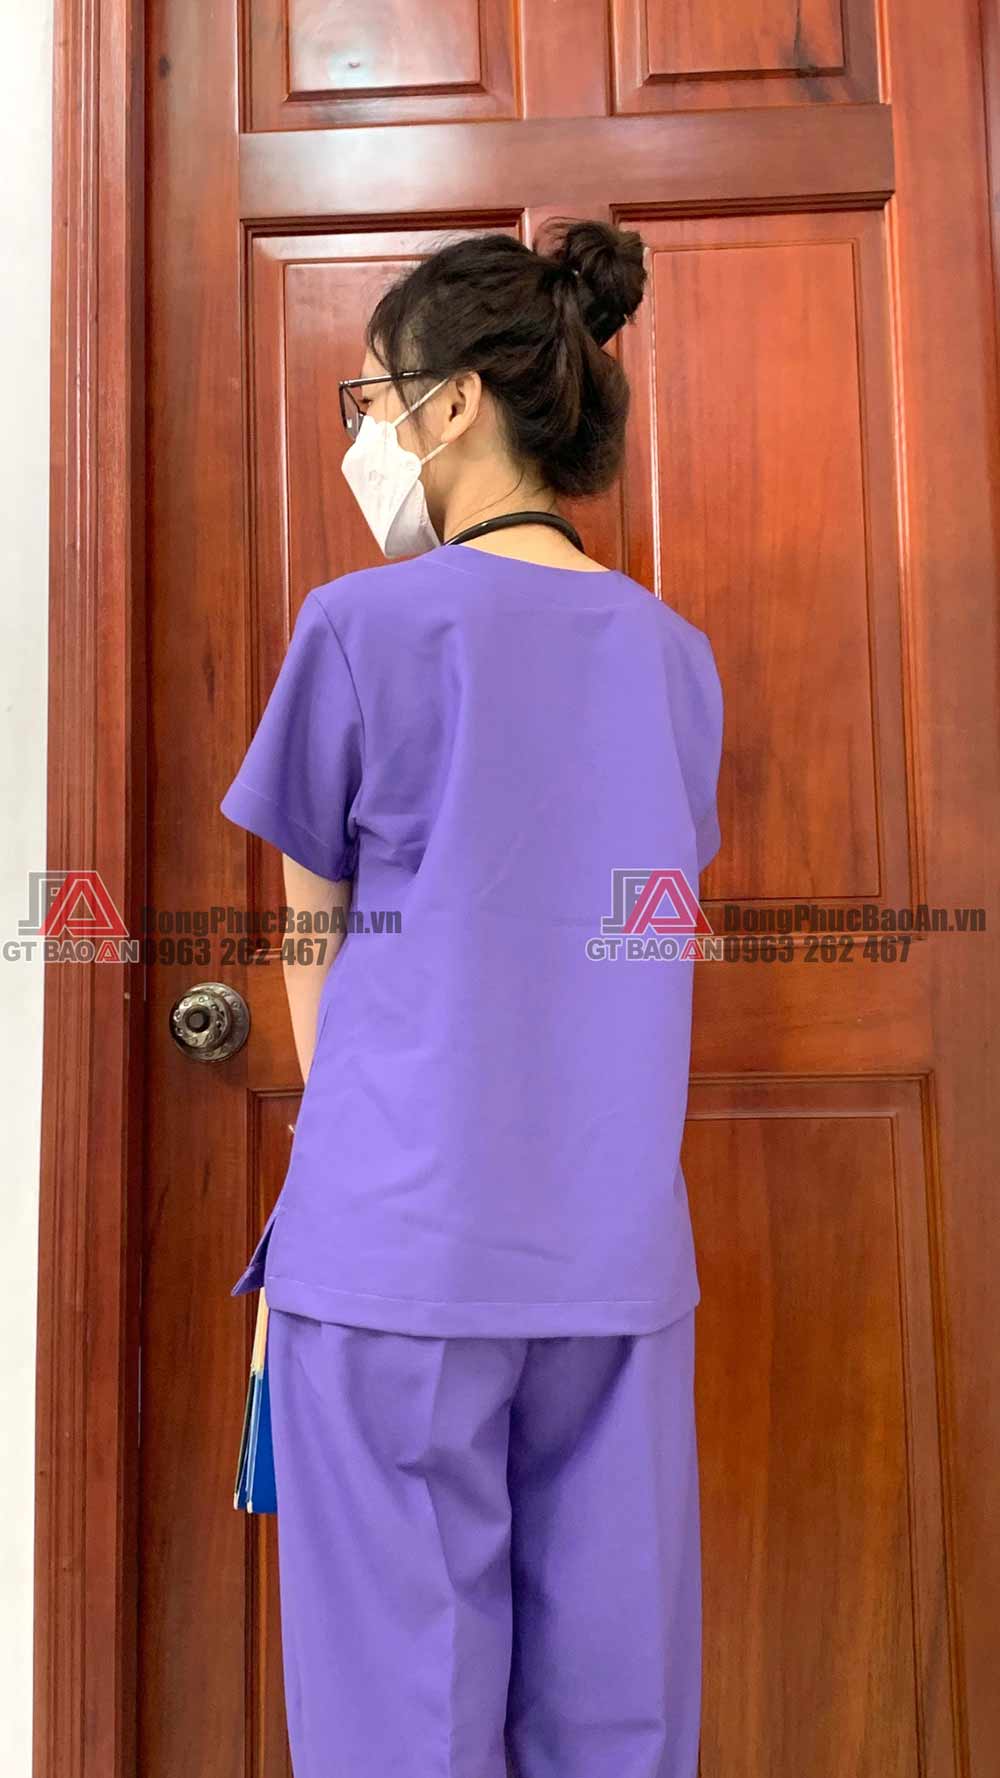 [SALE THÁNG 11 199K] May bộ Scrubs - Đồng phục y tế màu tím cho nữ điều dưỡng, thẩm mỹ viện, spa,..mới nhất 2022